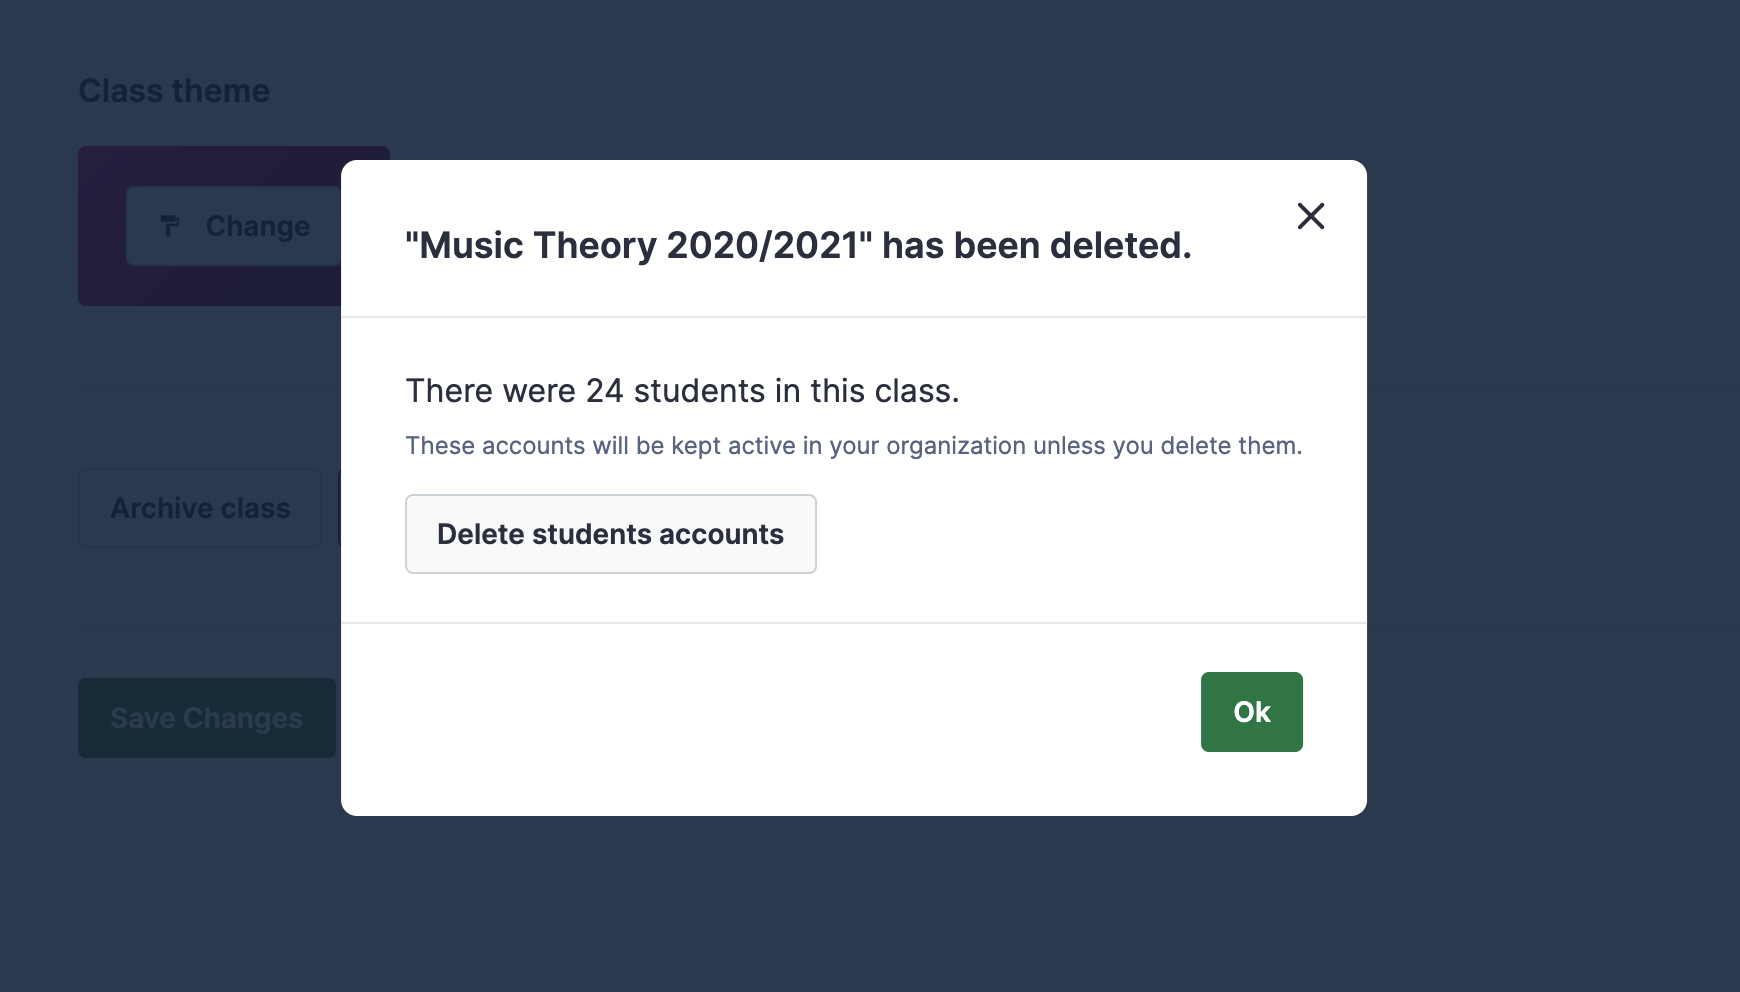 Delete students accounts?